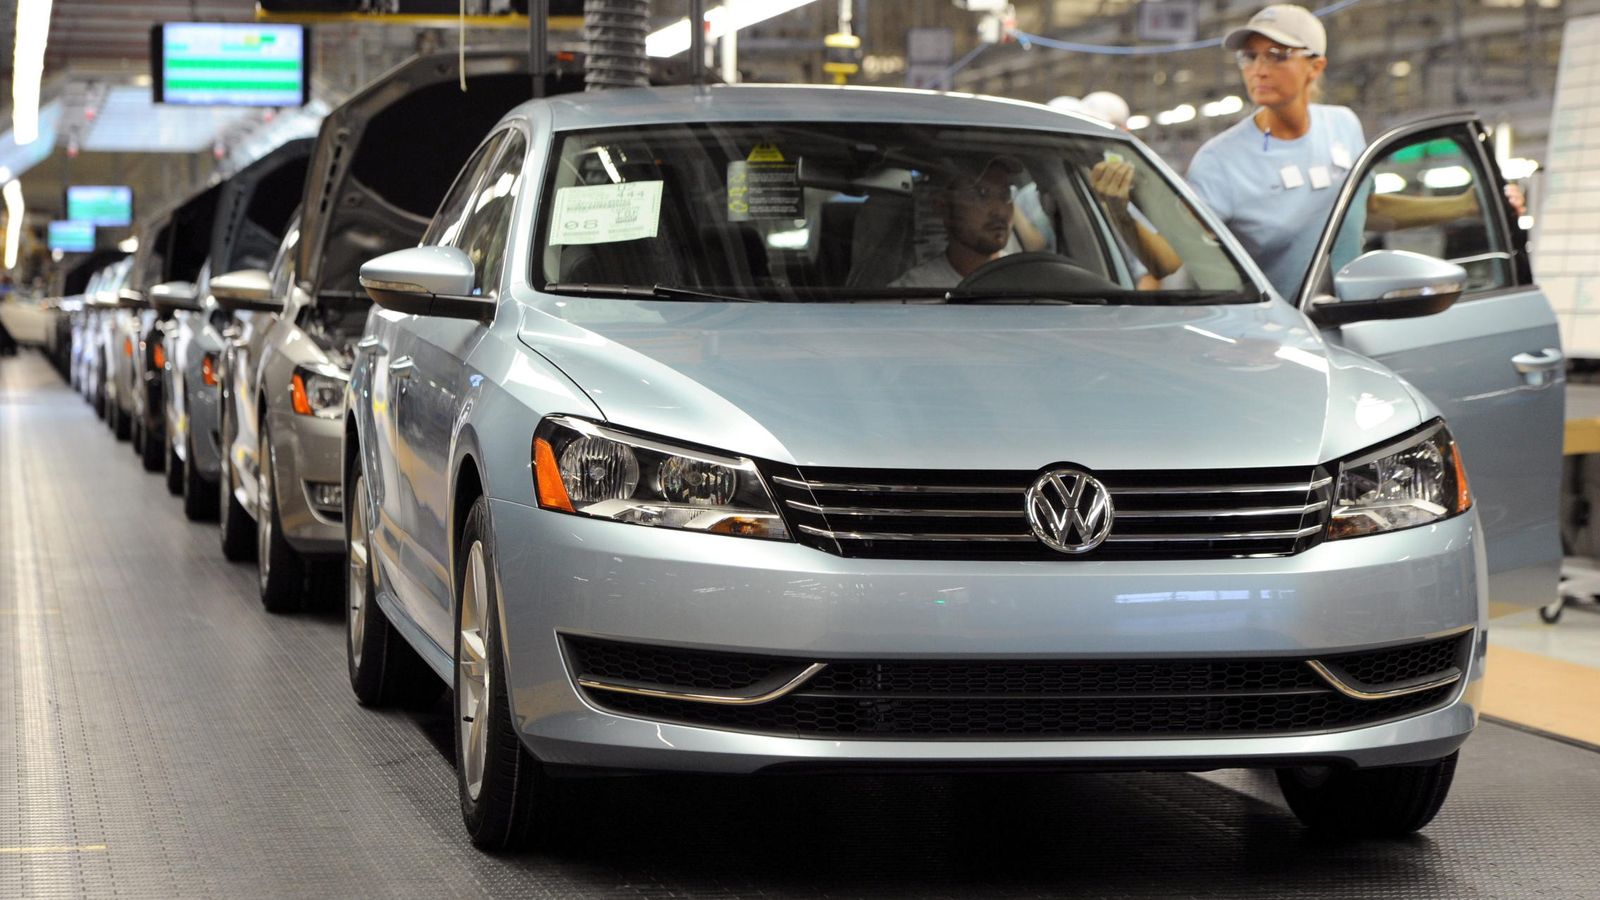 Foto: Interior de una fábrica de Volkswagen, el mayor fabricante automovilístico del mundo. (Efe)